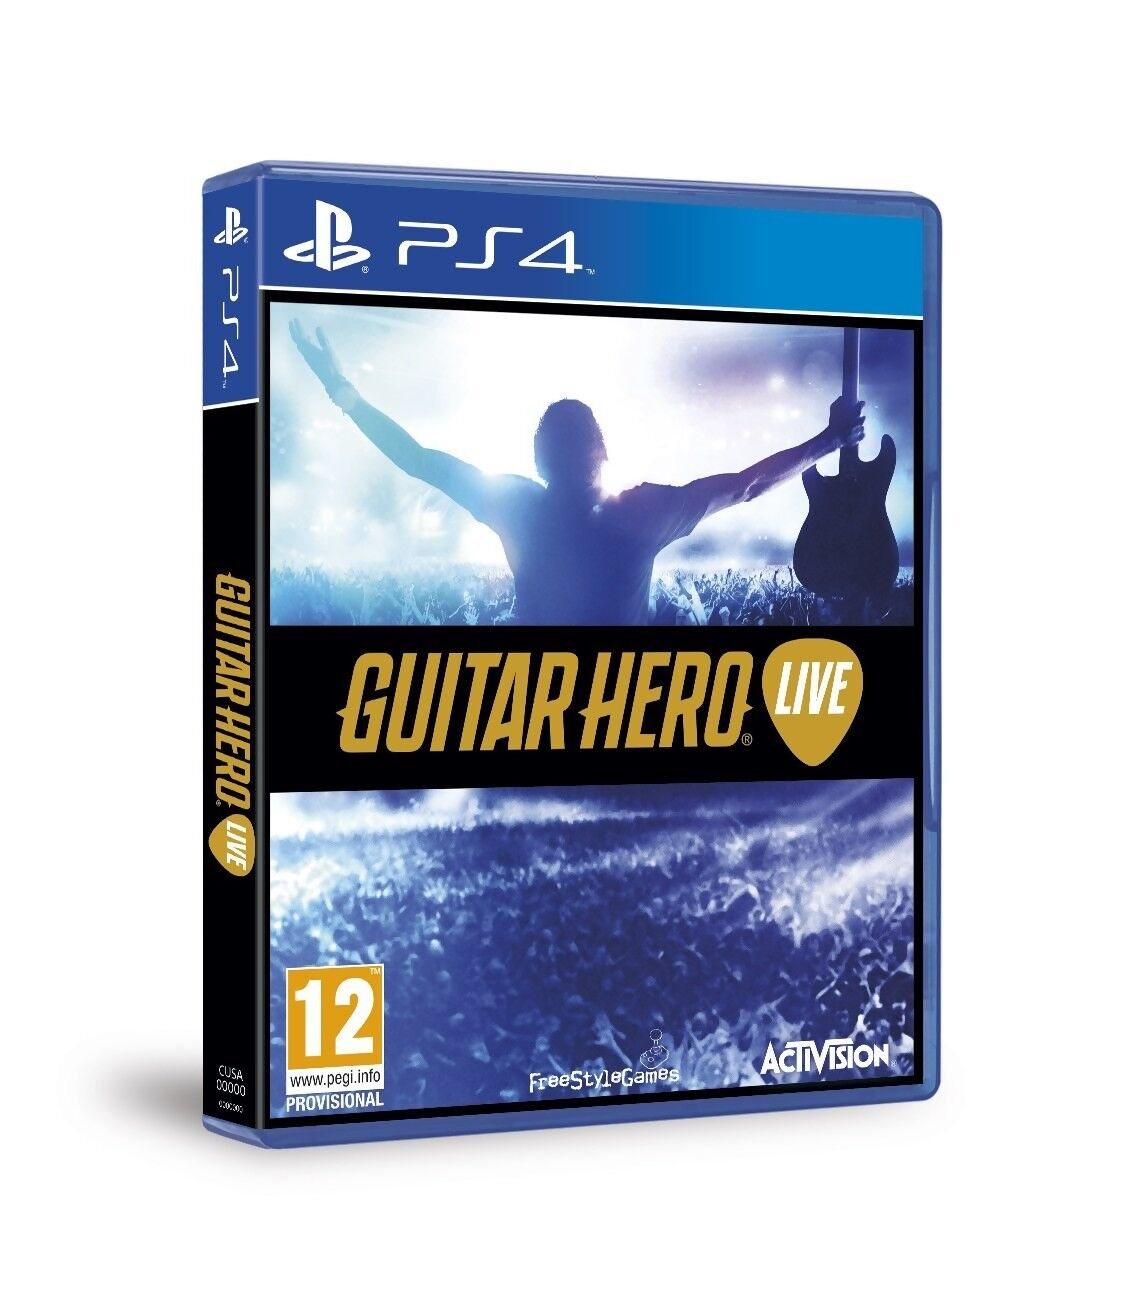 Jeux Vidéo Guitar Hero Live (sans guitare) PlayStation 4 (PS4) d ...